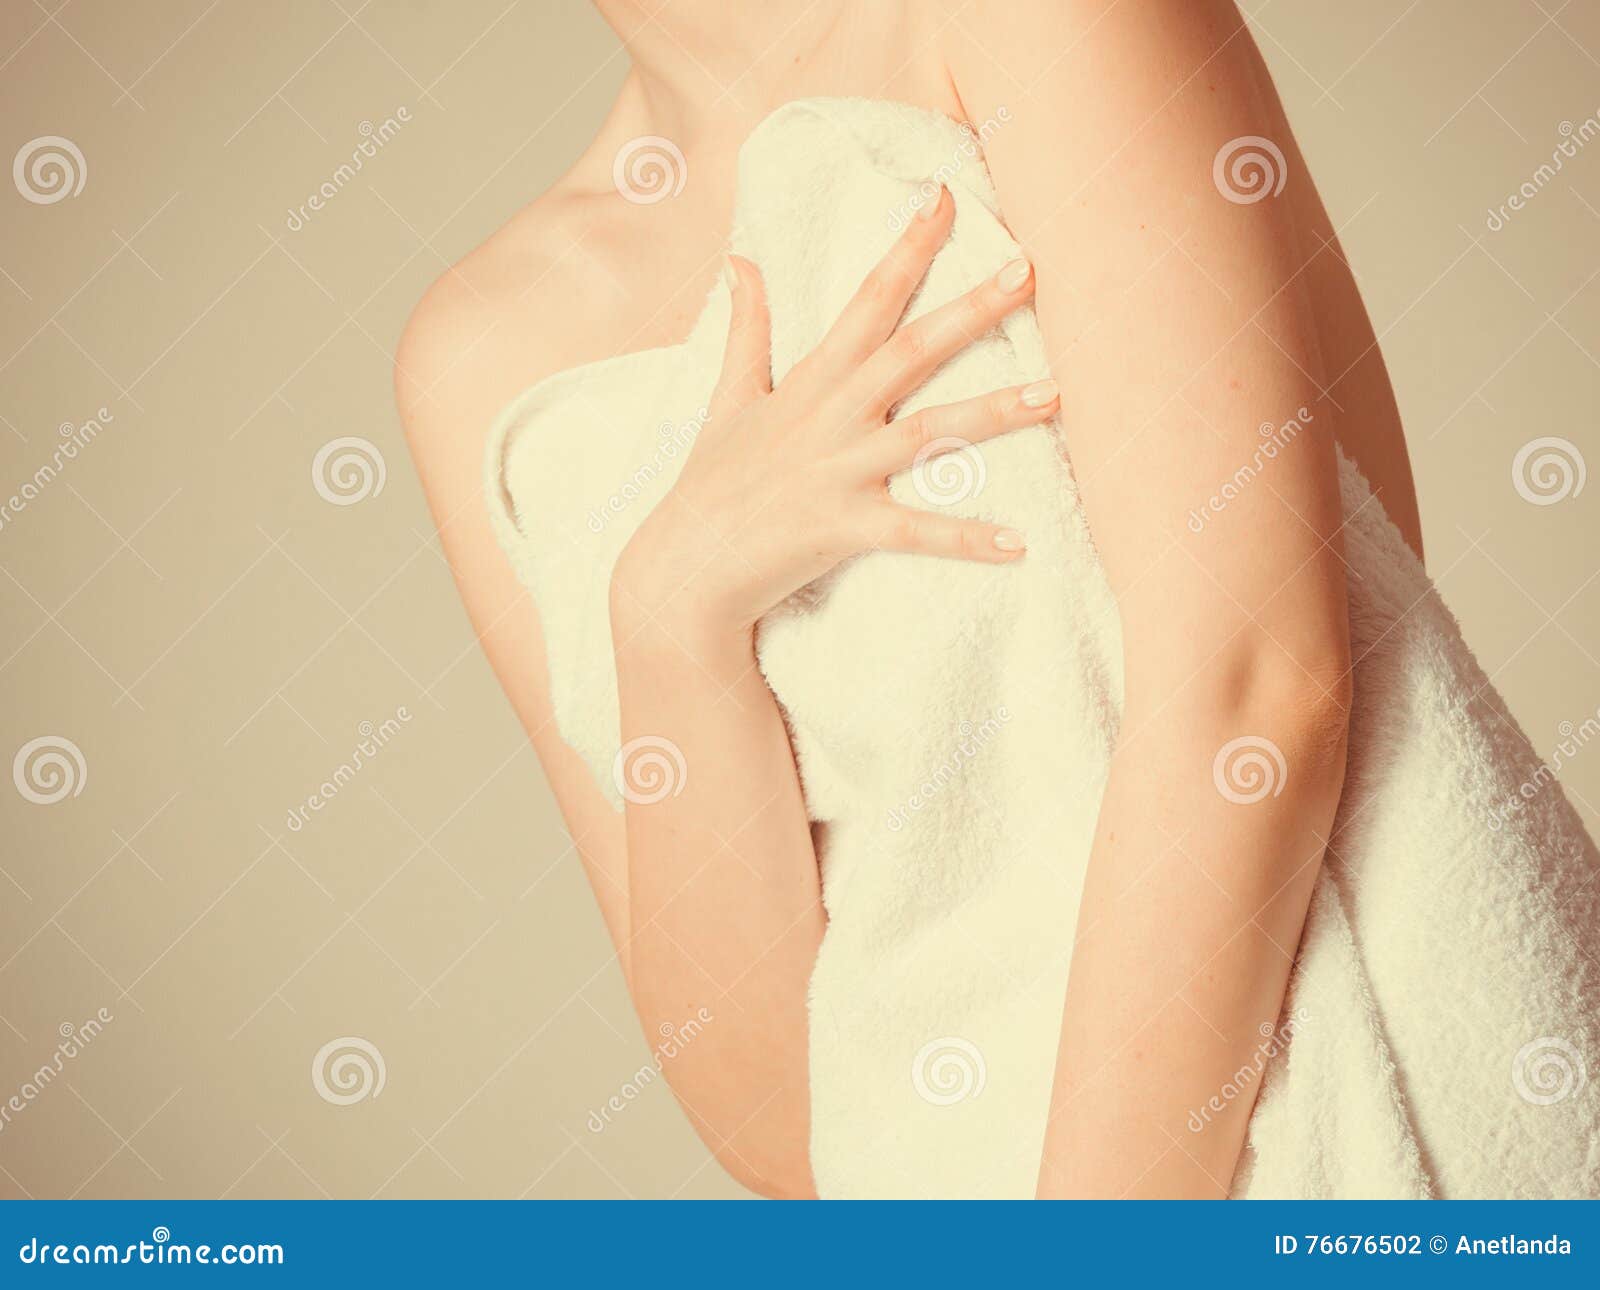 Прикрылась полотенцем. Прикрывается руками. Девушка прикрывает грудь полотенцем. Прикрывает большую грудь полотенцем.